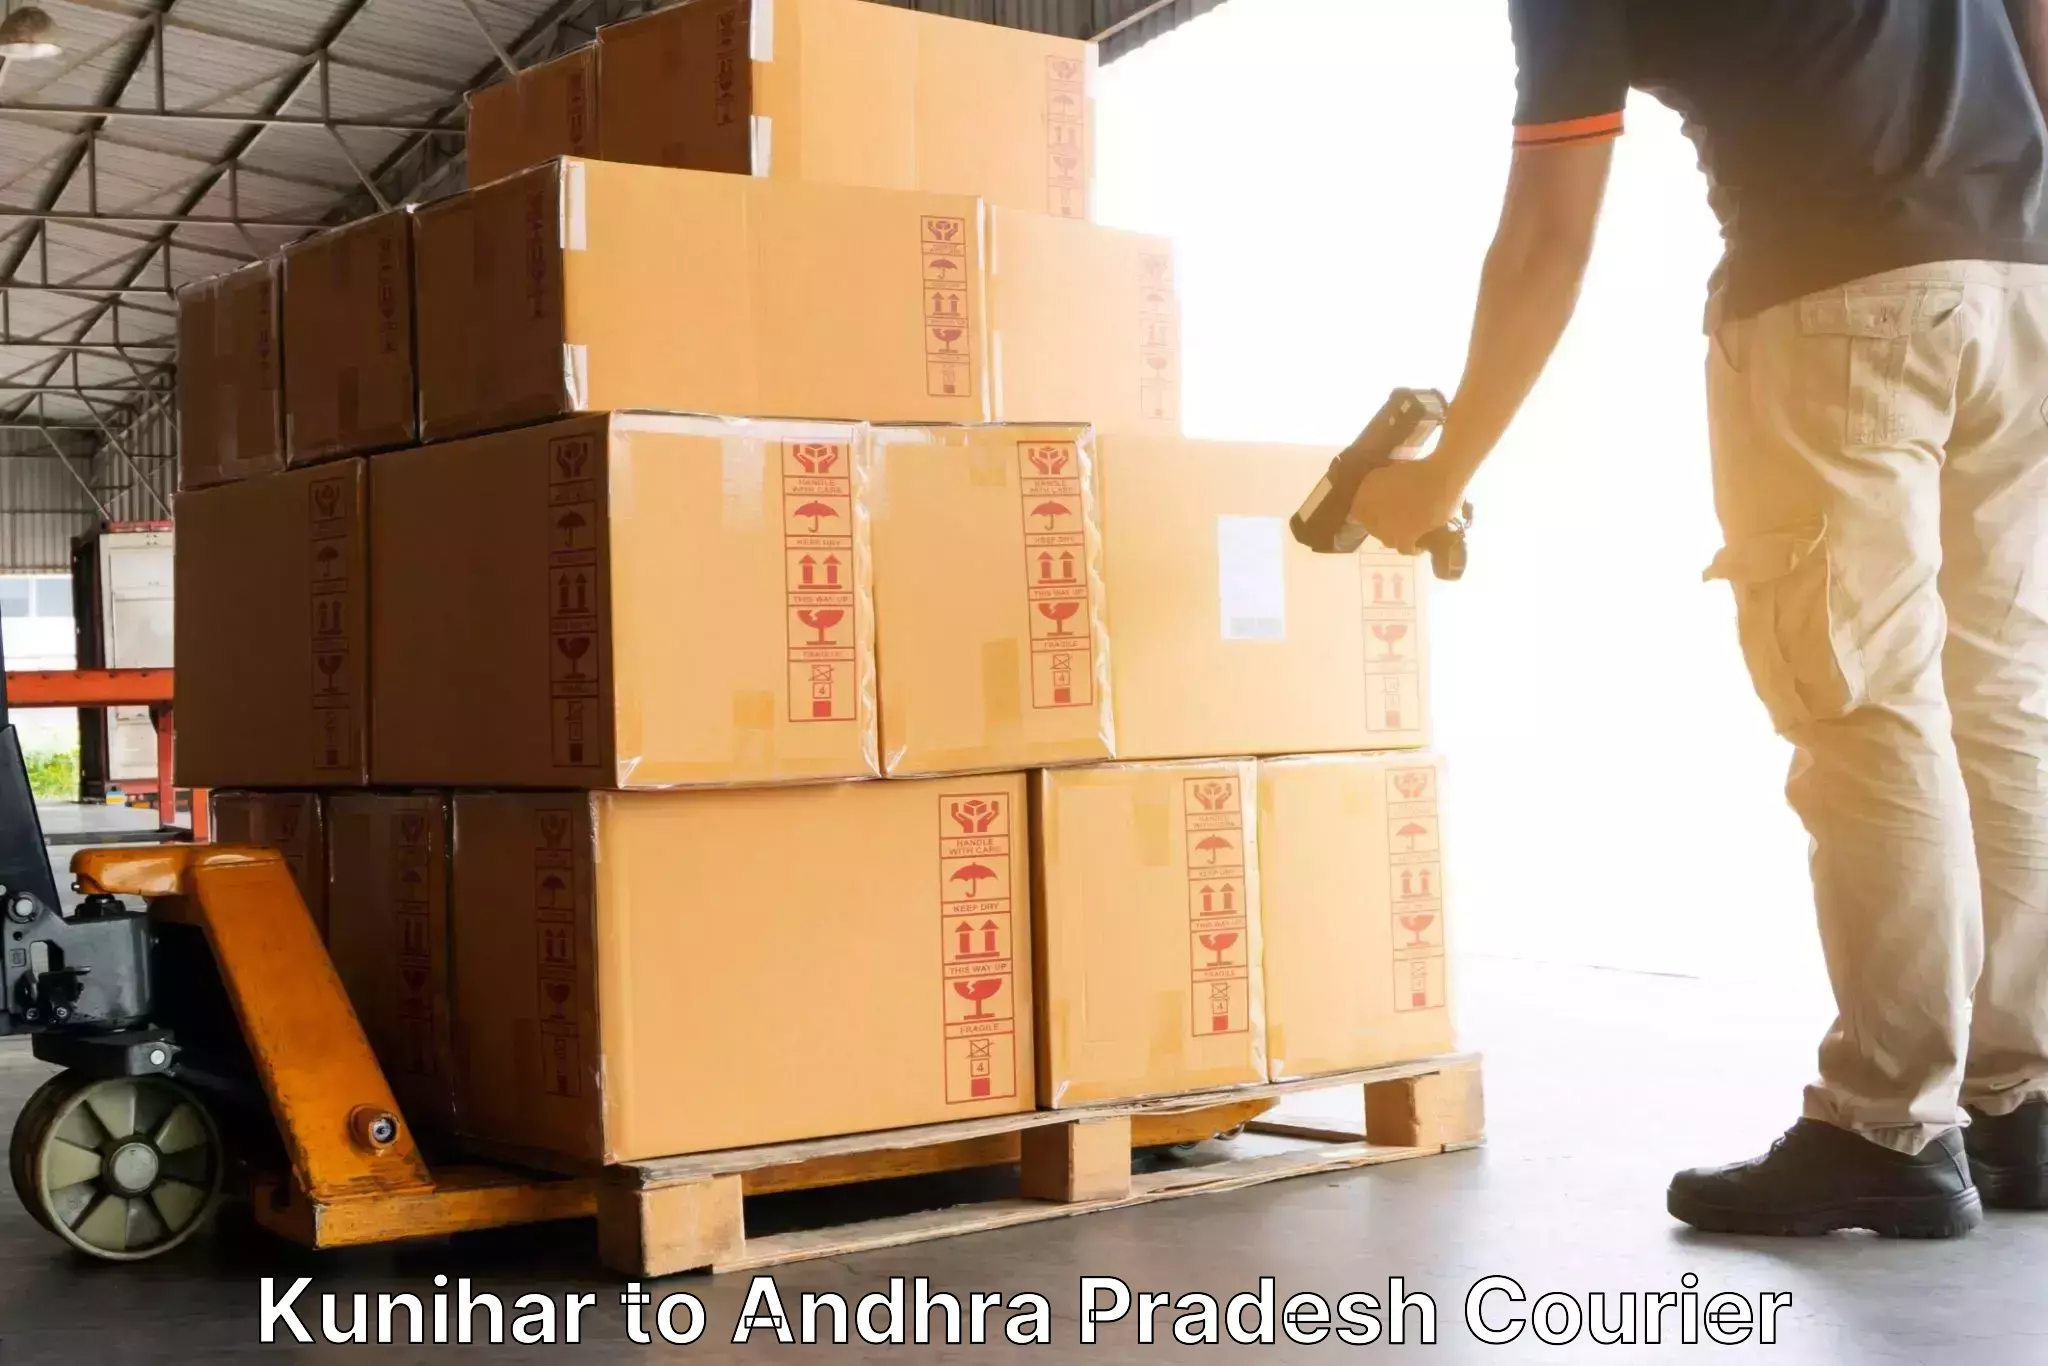 Local delivery service Kunihar to Chodavaram